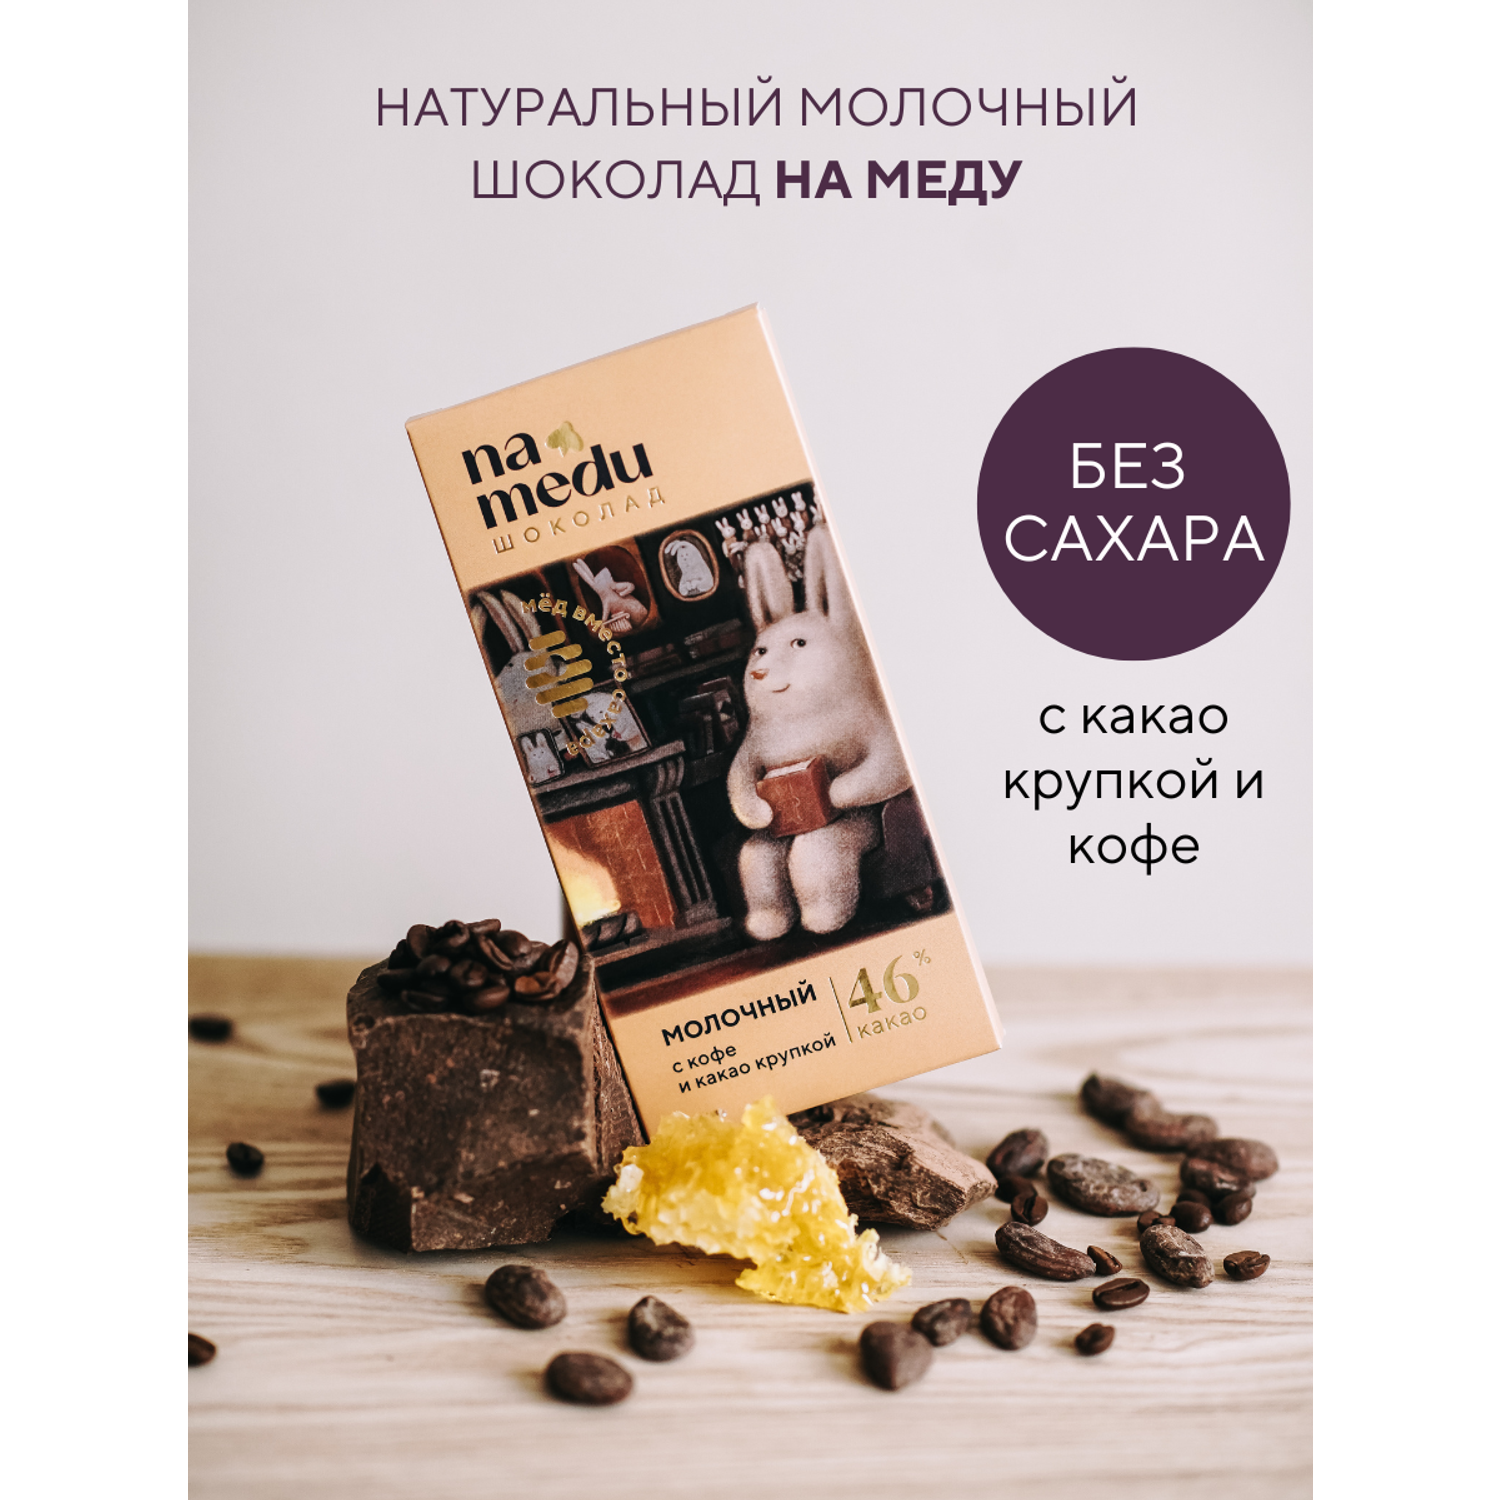 Шоколад плиточный NAMEDU на меду с какао крупкой и кофе - фото 1